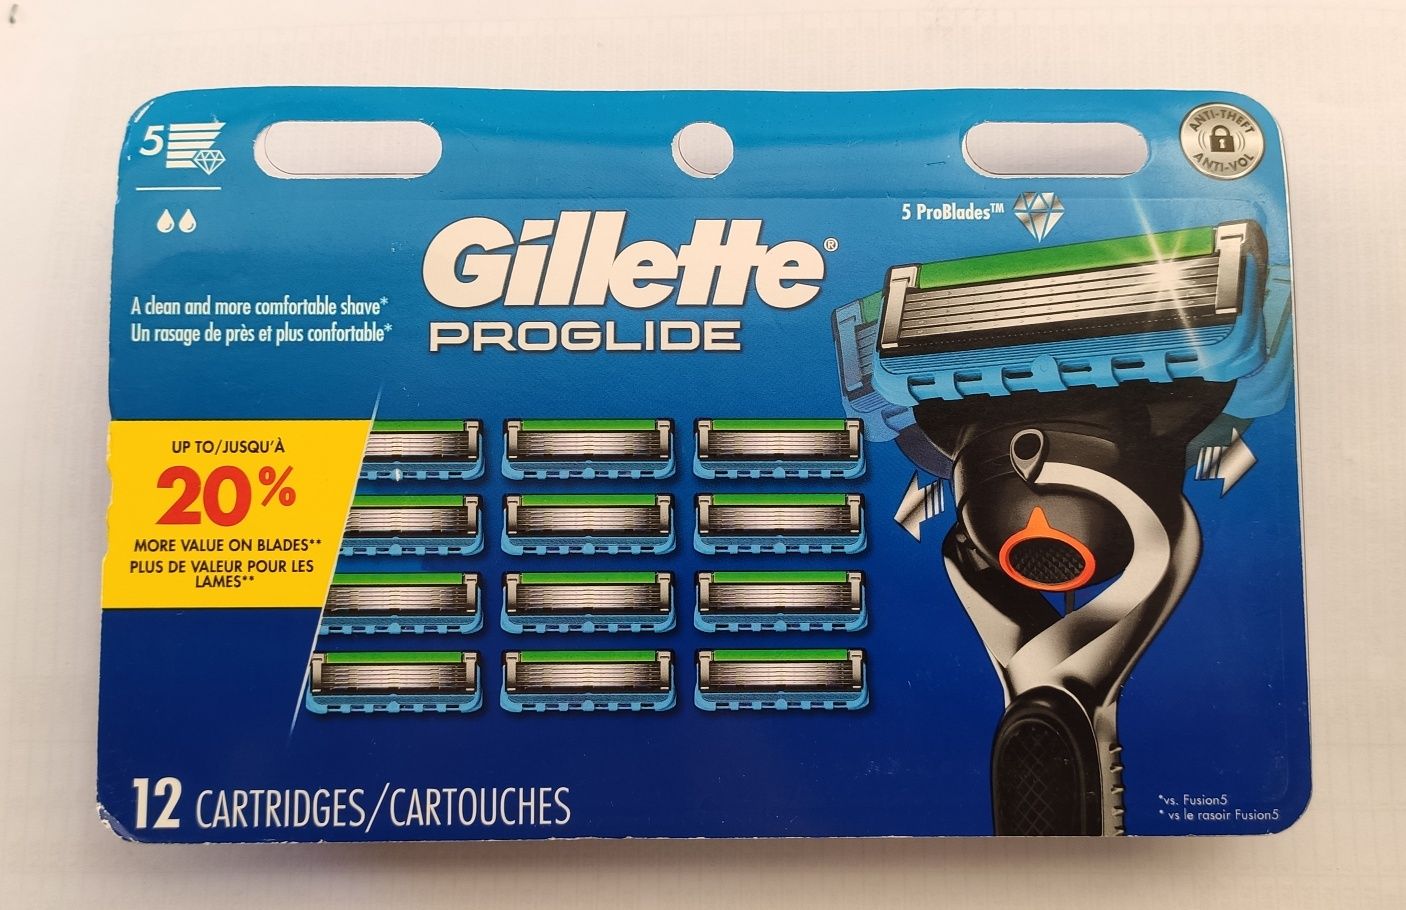 Gillette Fusion5 ProGlide Power